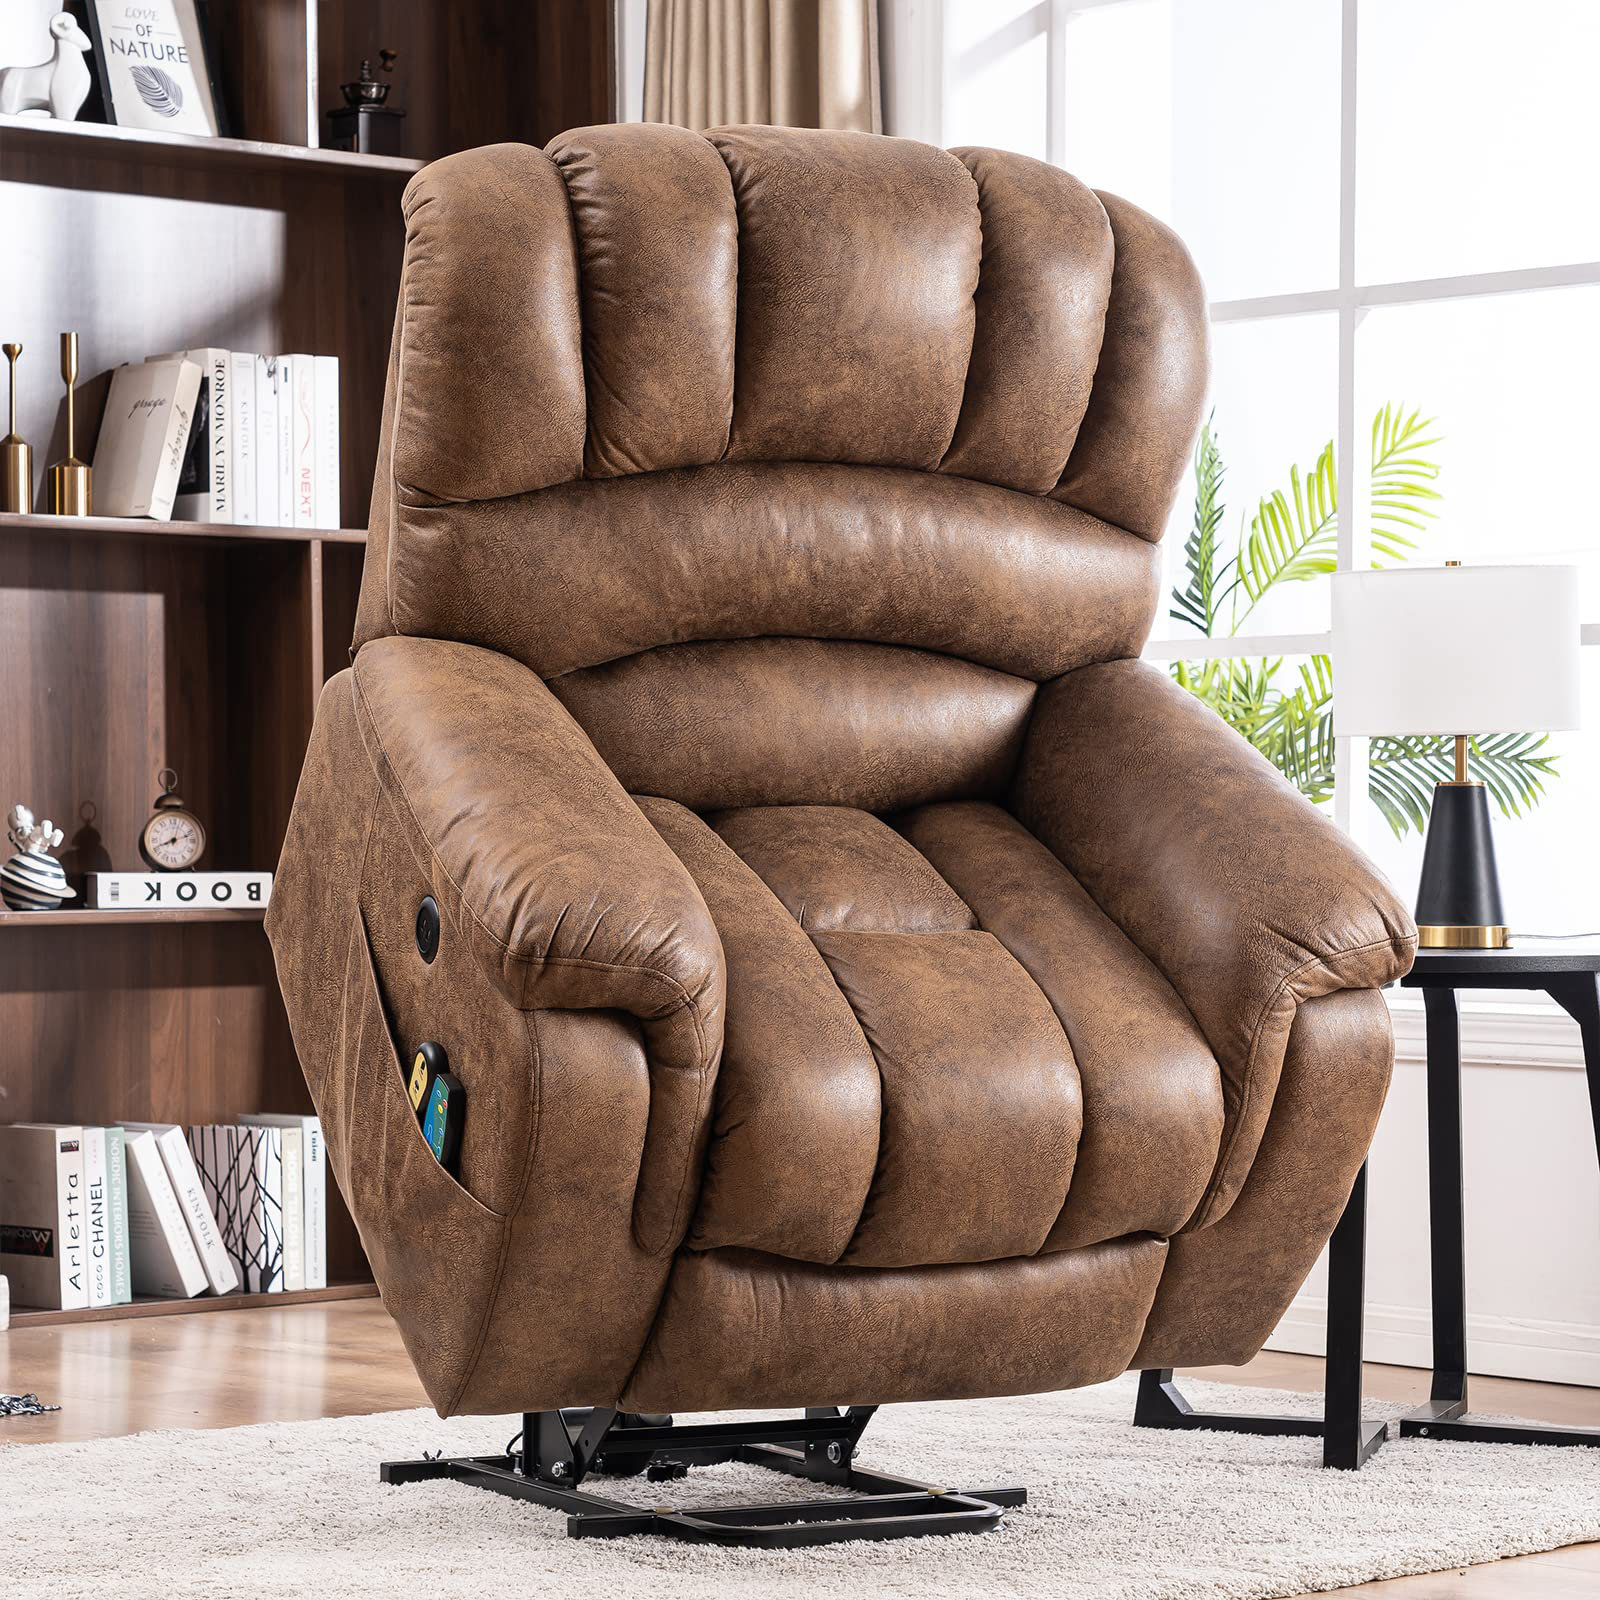 https://assets.wfcdn.com/im/92789015/compr-r85/2220/222005615/meetwarm-large-power-lift-heavy-duty-overstuffed-wide-electric-recliner-chair.jpg